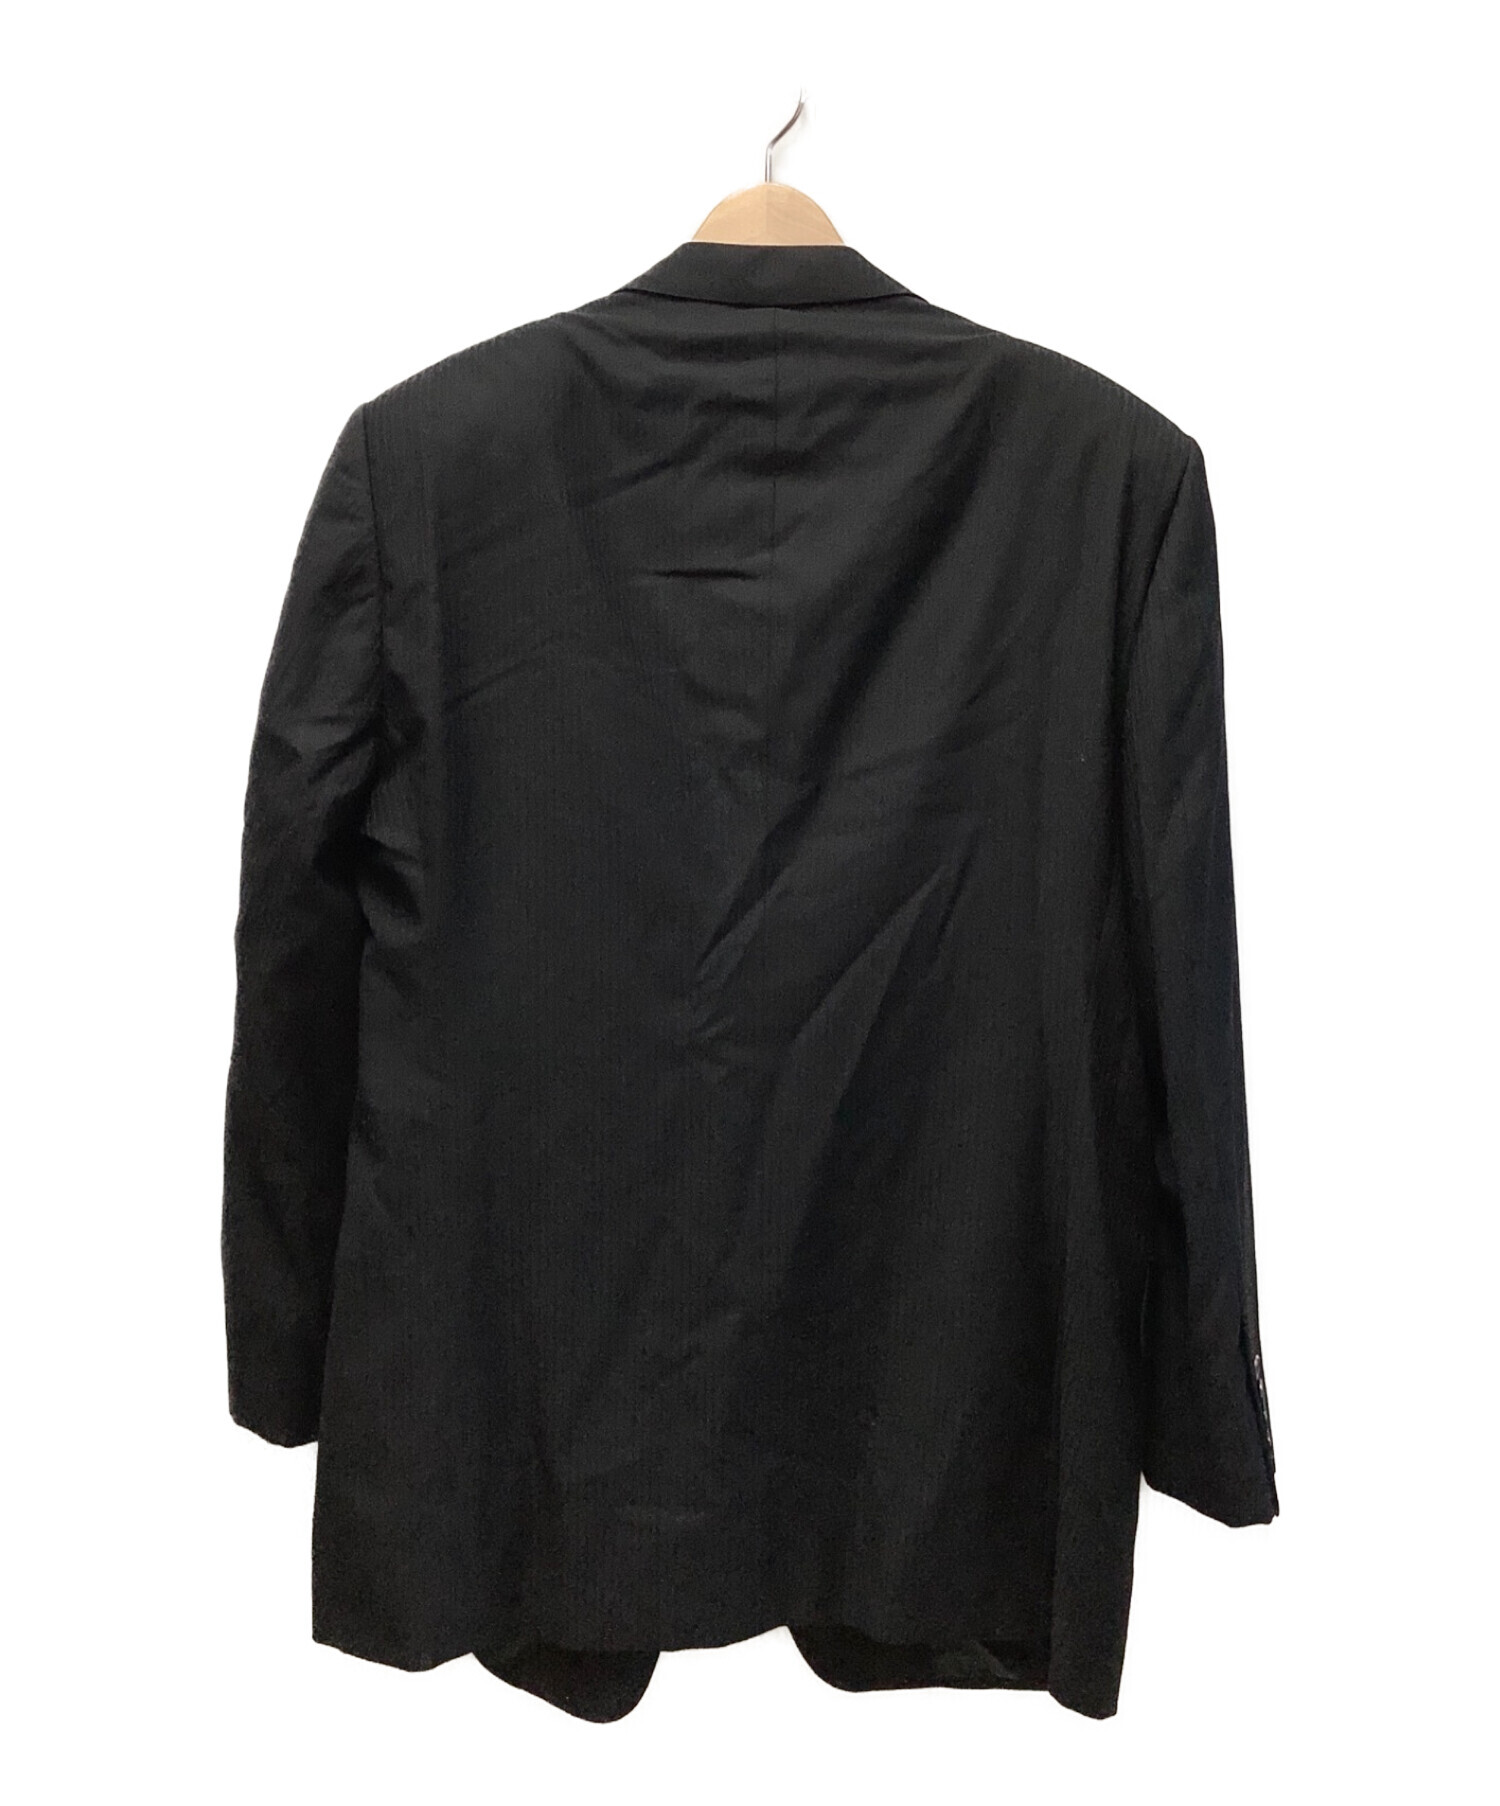 ARMANI COLLEZIONI (アルマーニコレツィオーニ) 3Bスーツ ブラック サイズ:54